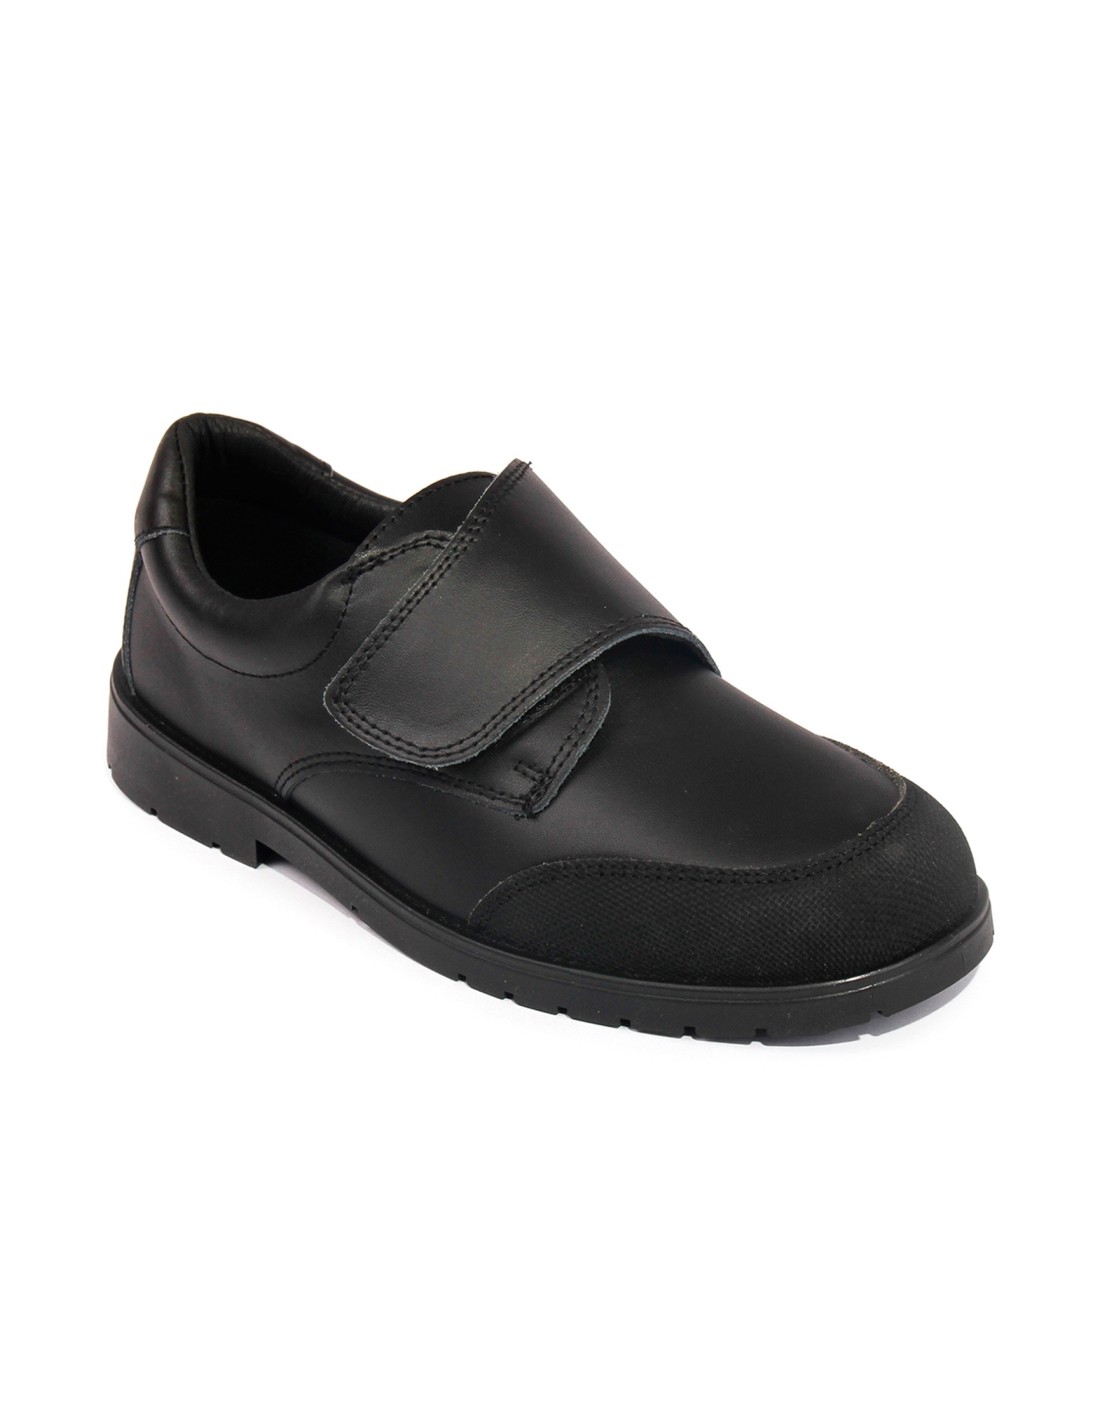 Zapatos Velcro PIEL LAVABLE - GLOBAL DEL CALZADO S.L. |